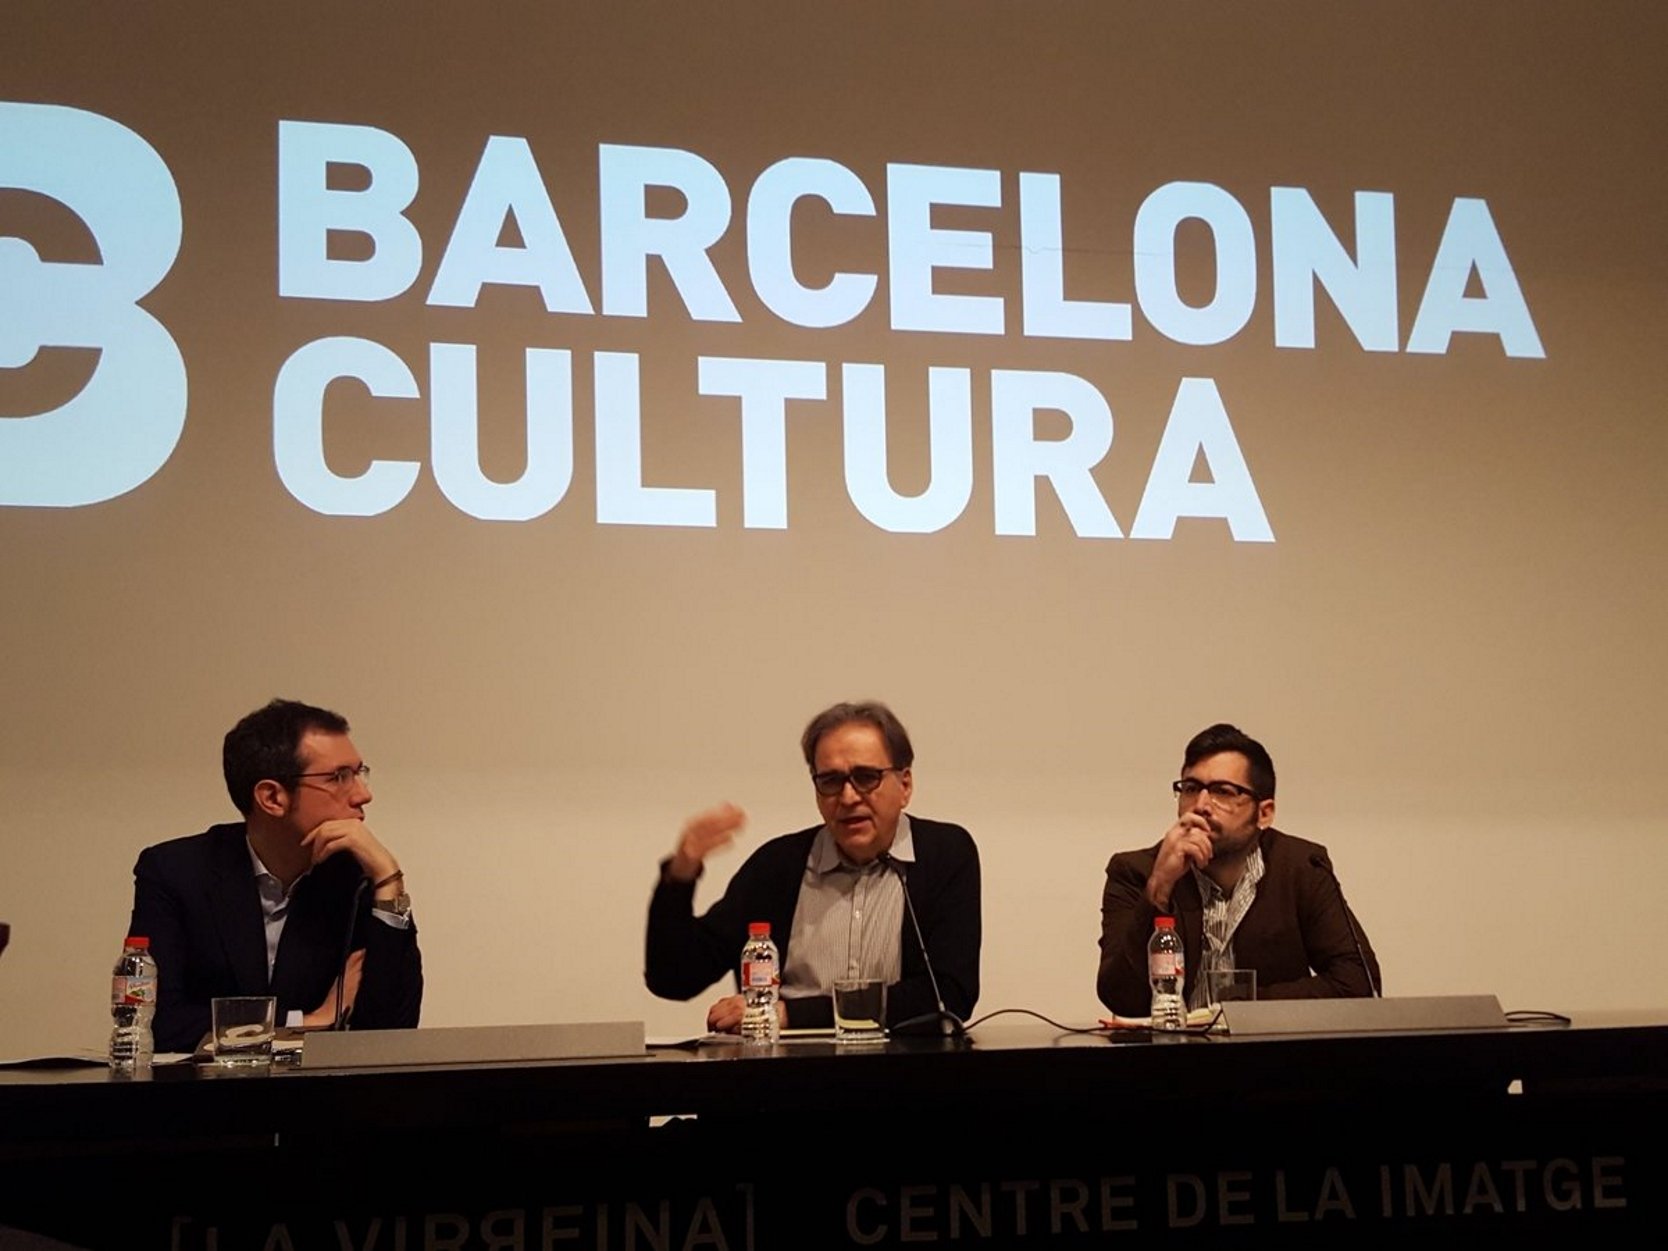 Los grandes filósofos compartirán sus reflexiones en las plazas de Barcelona